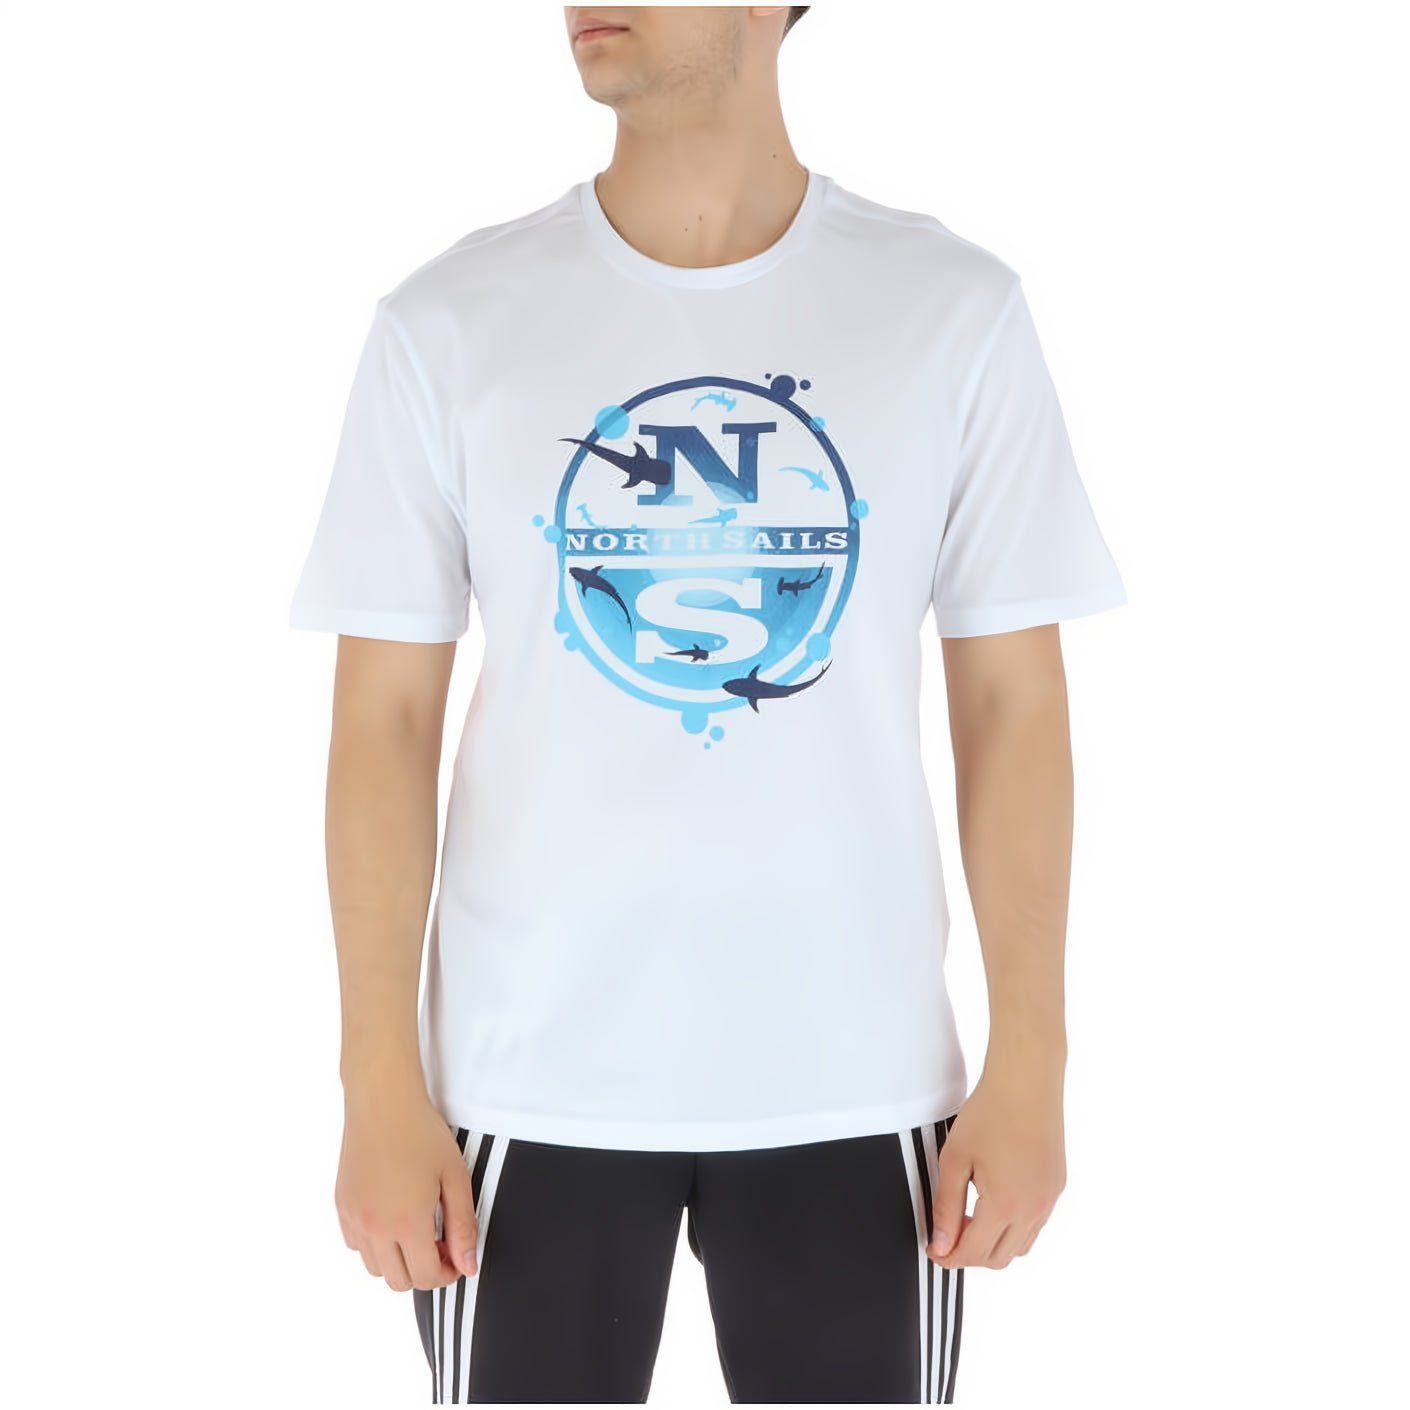 North Sails T-Shirt modische Herren T-Shirt Entdecke modische Sails, Herren! das T-Shirt für North